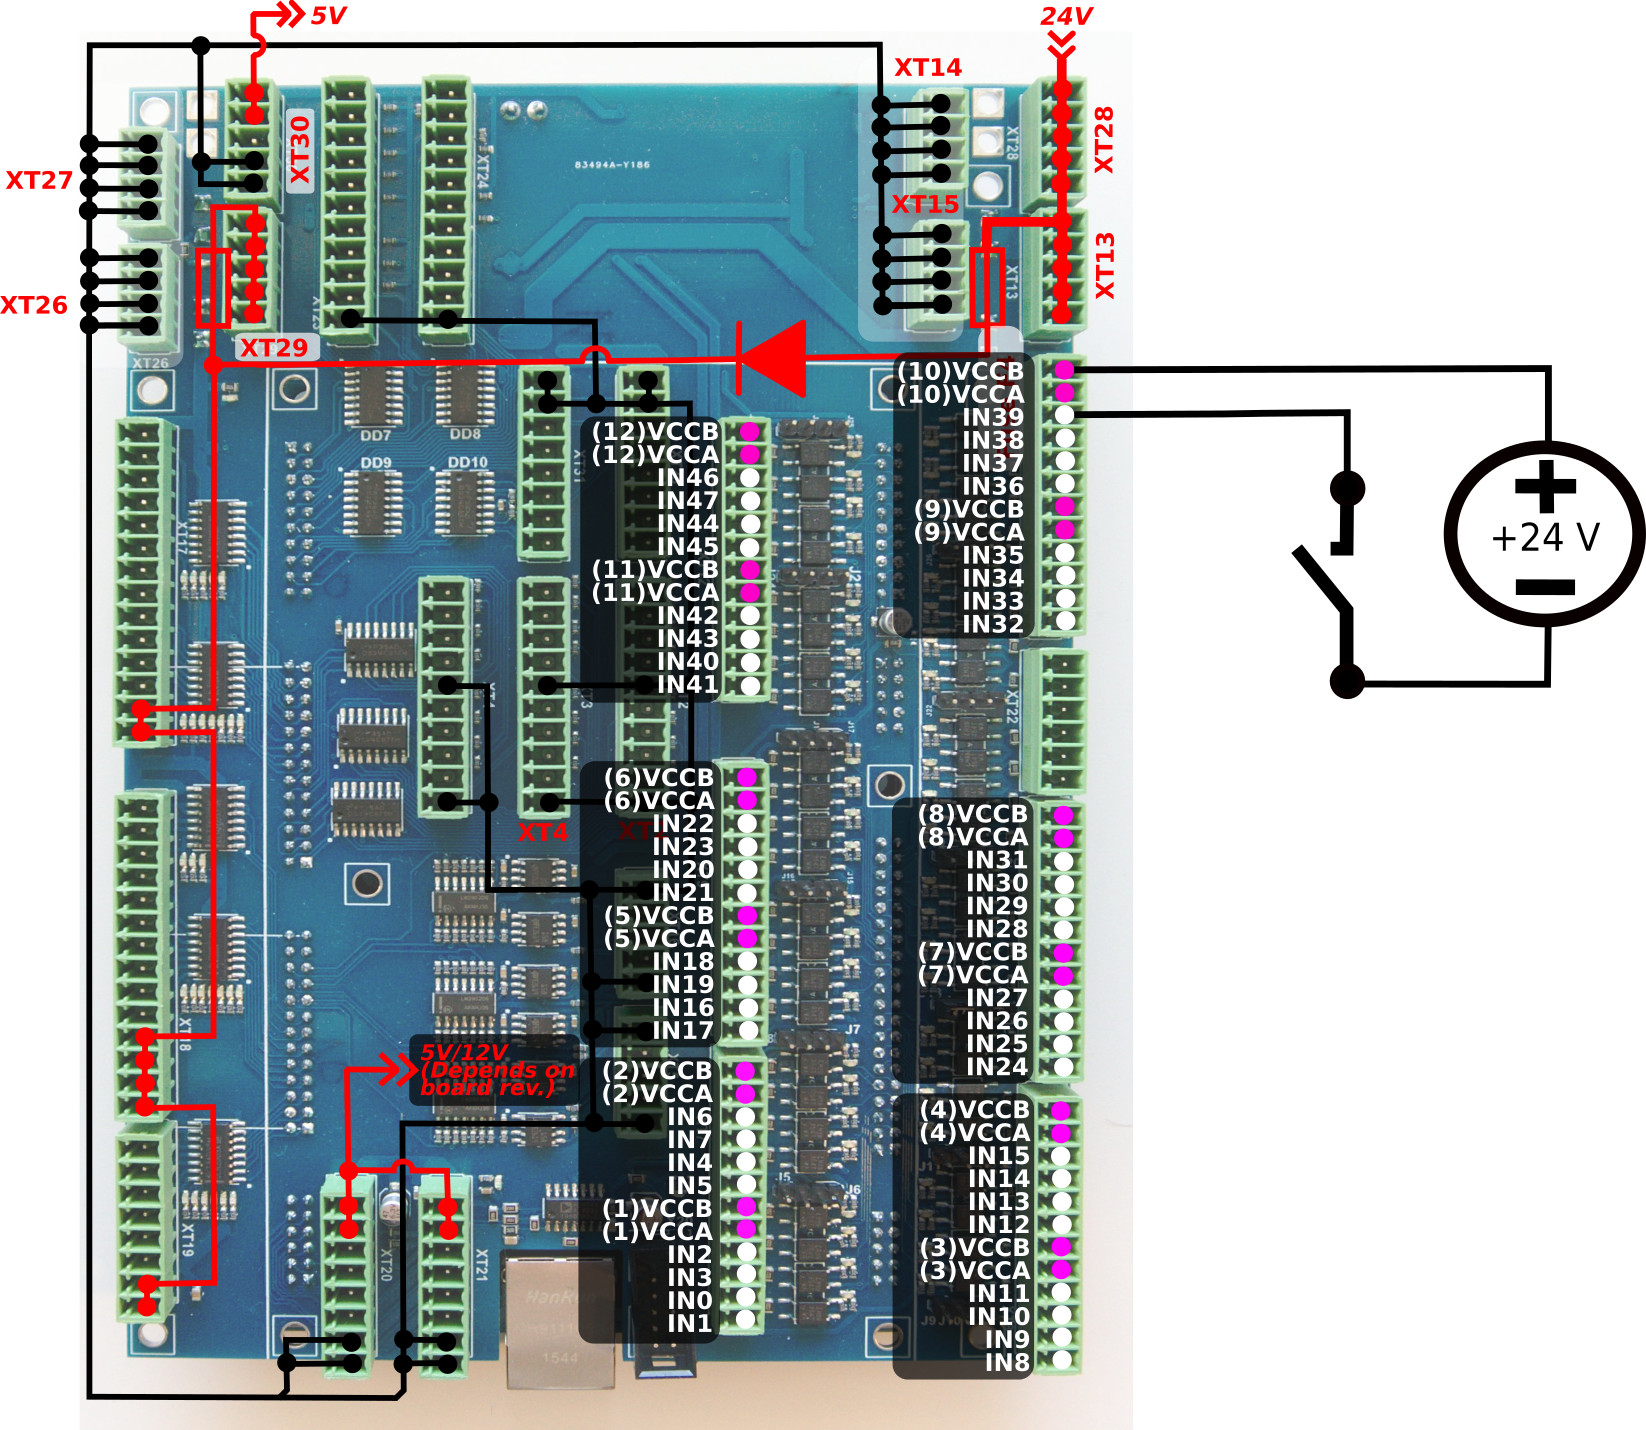 et10-connection-inputs-002-key-01-02.jpg